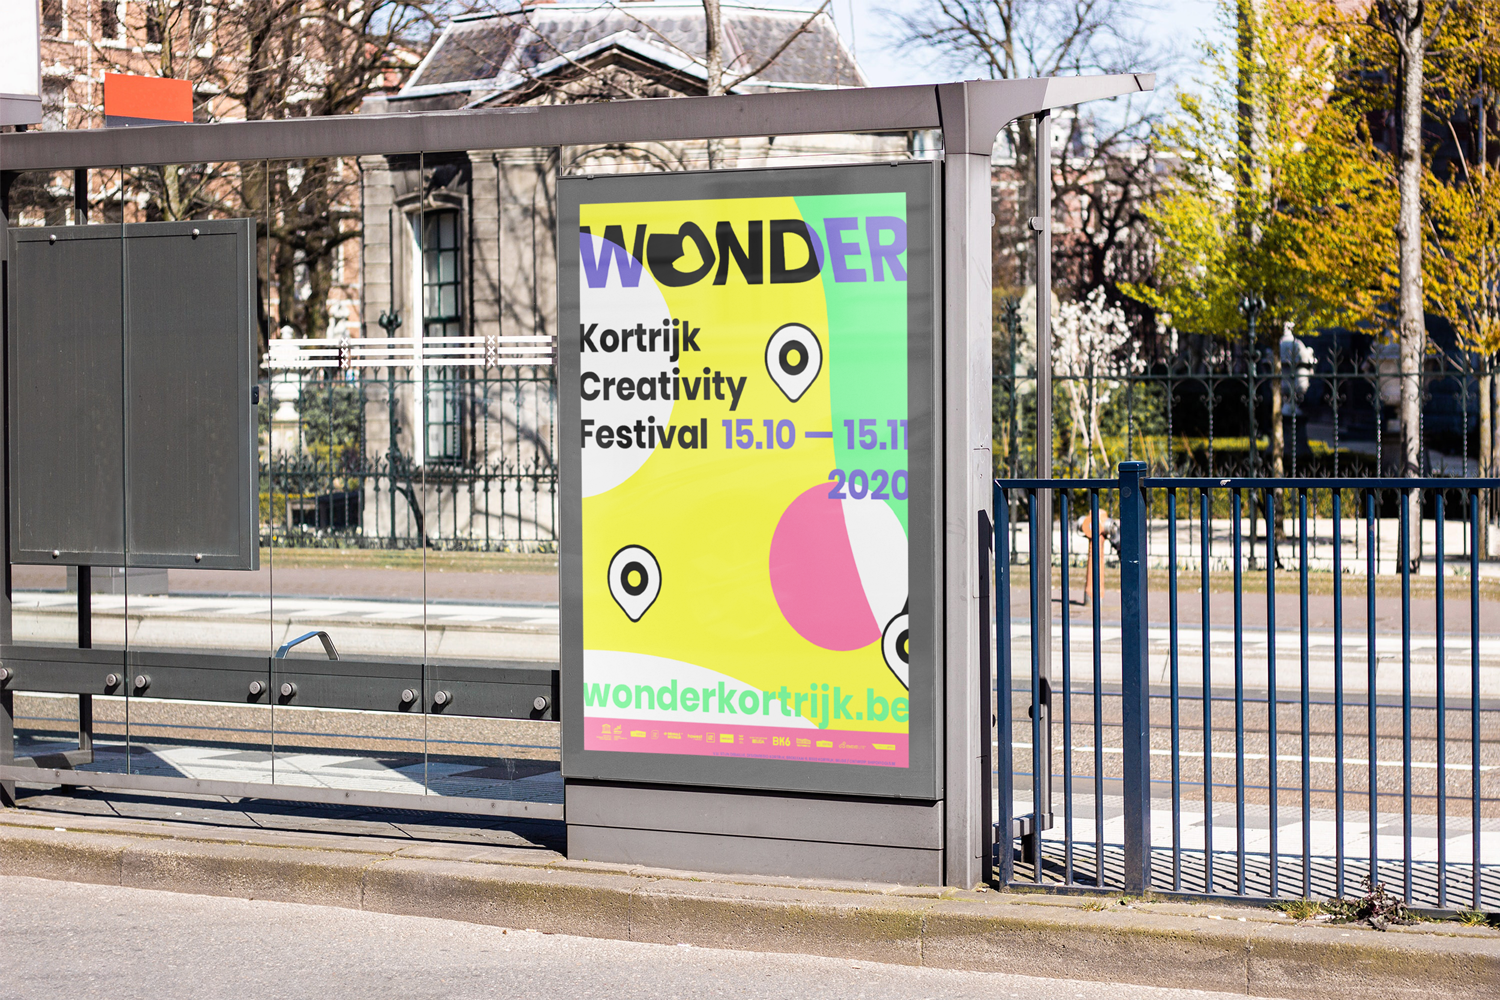 Wonder-Kortrijk-Creativity-Festival-identity-branding-Designregio-Kortrijk-Artist-Proof-Studio-Thomas-De-Ben-4.png